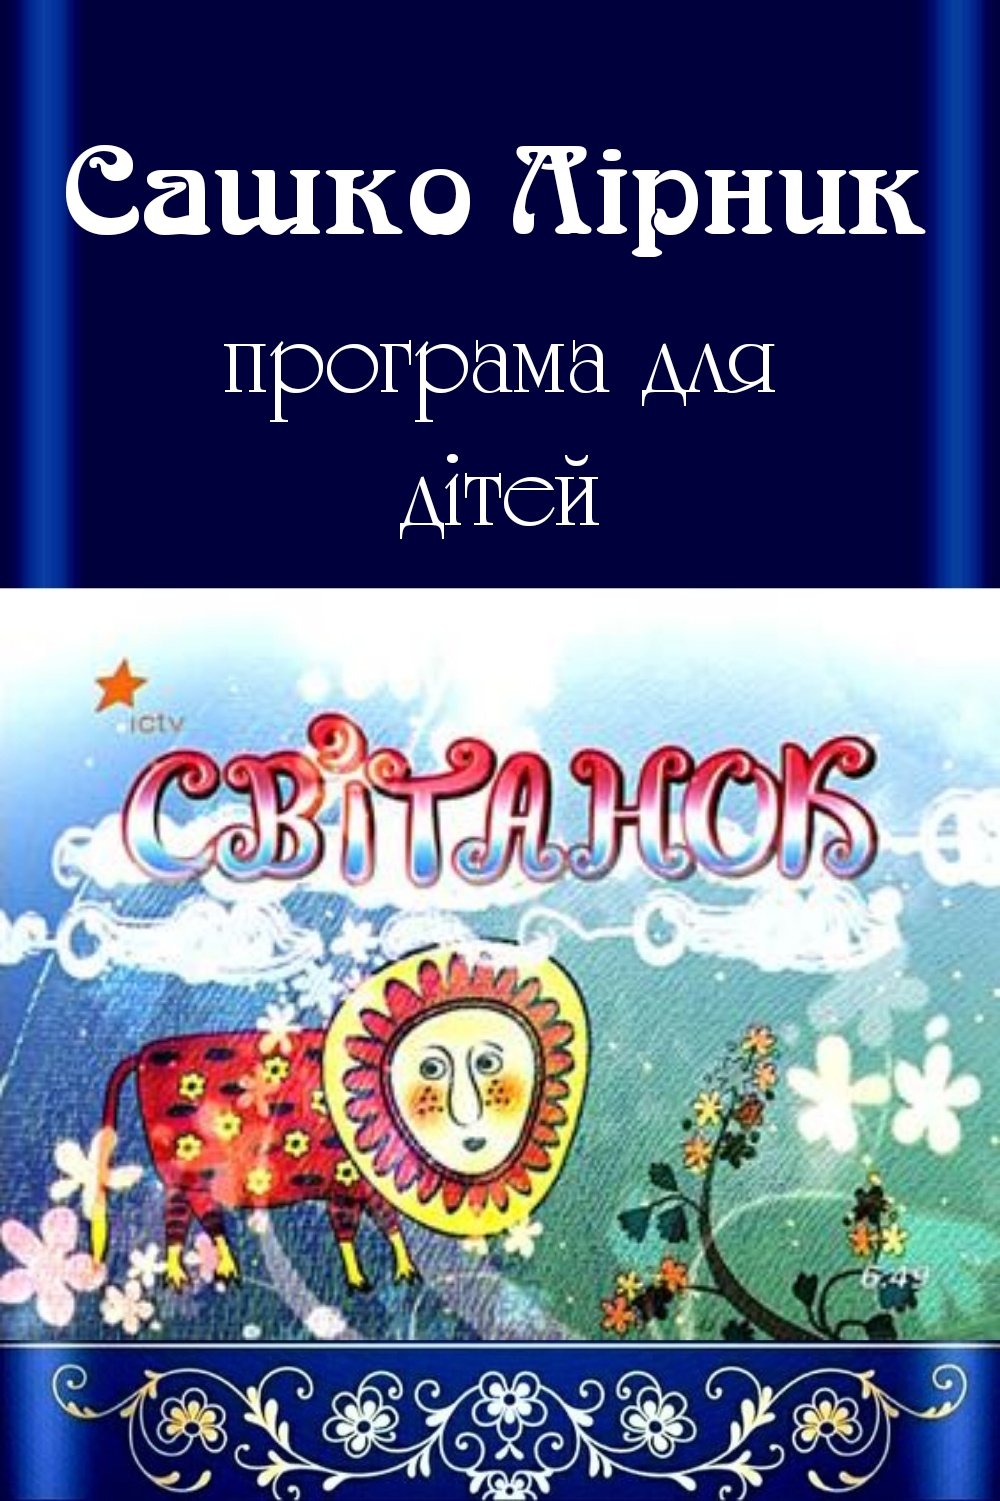 Програма для дітей "Світанок" - Сашко лірник - Слухати Книги Українською Онлайн Безкоштовно 📘 Knigi-Audio.com/uk/